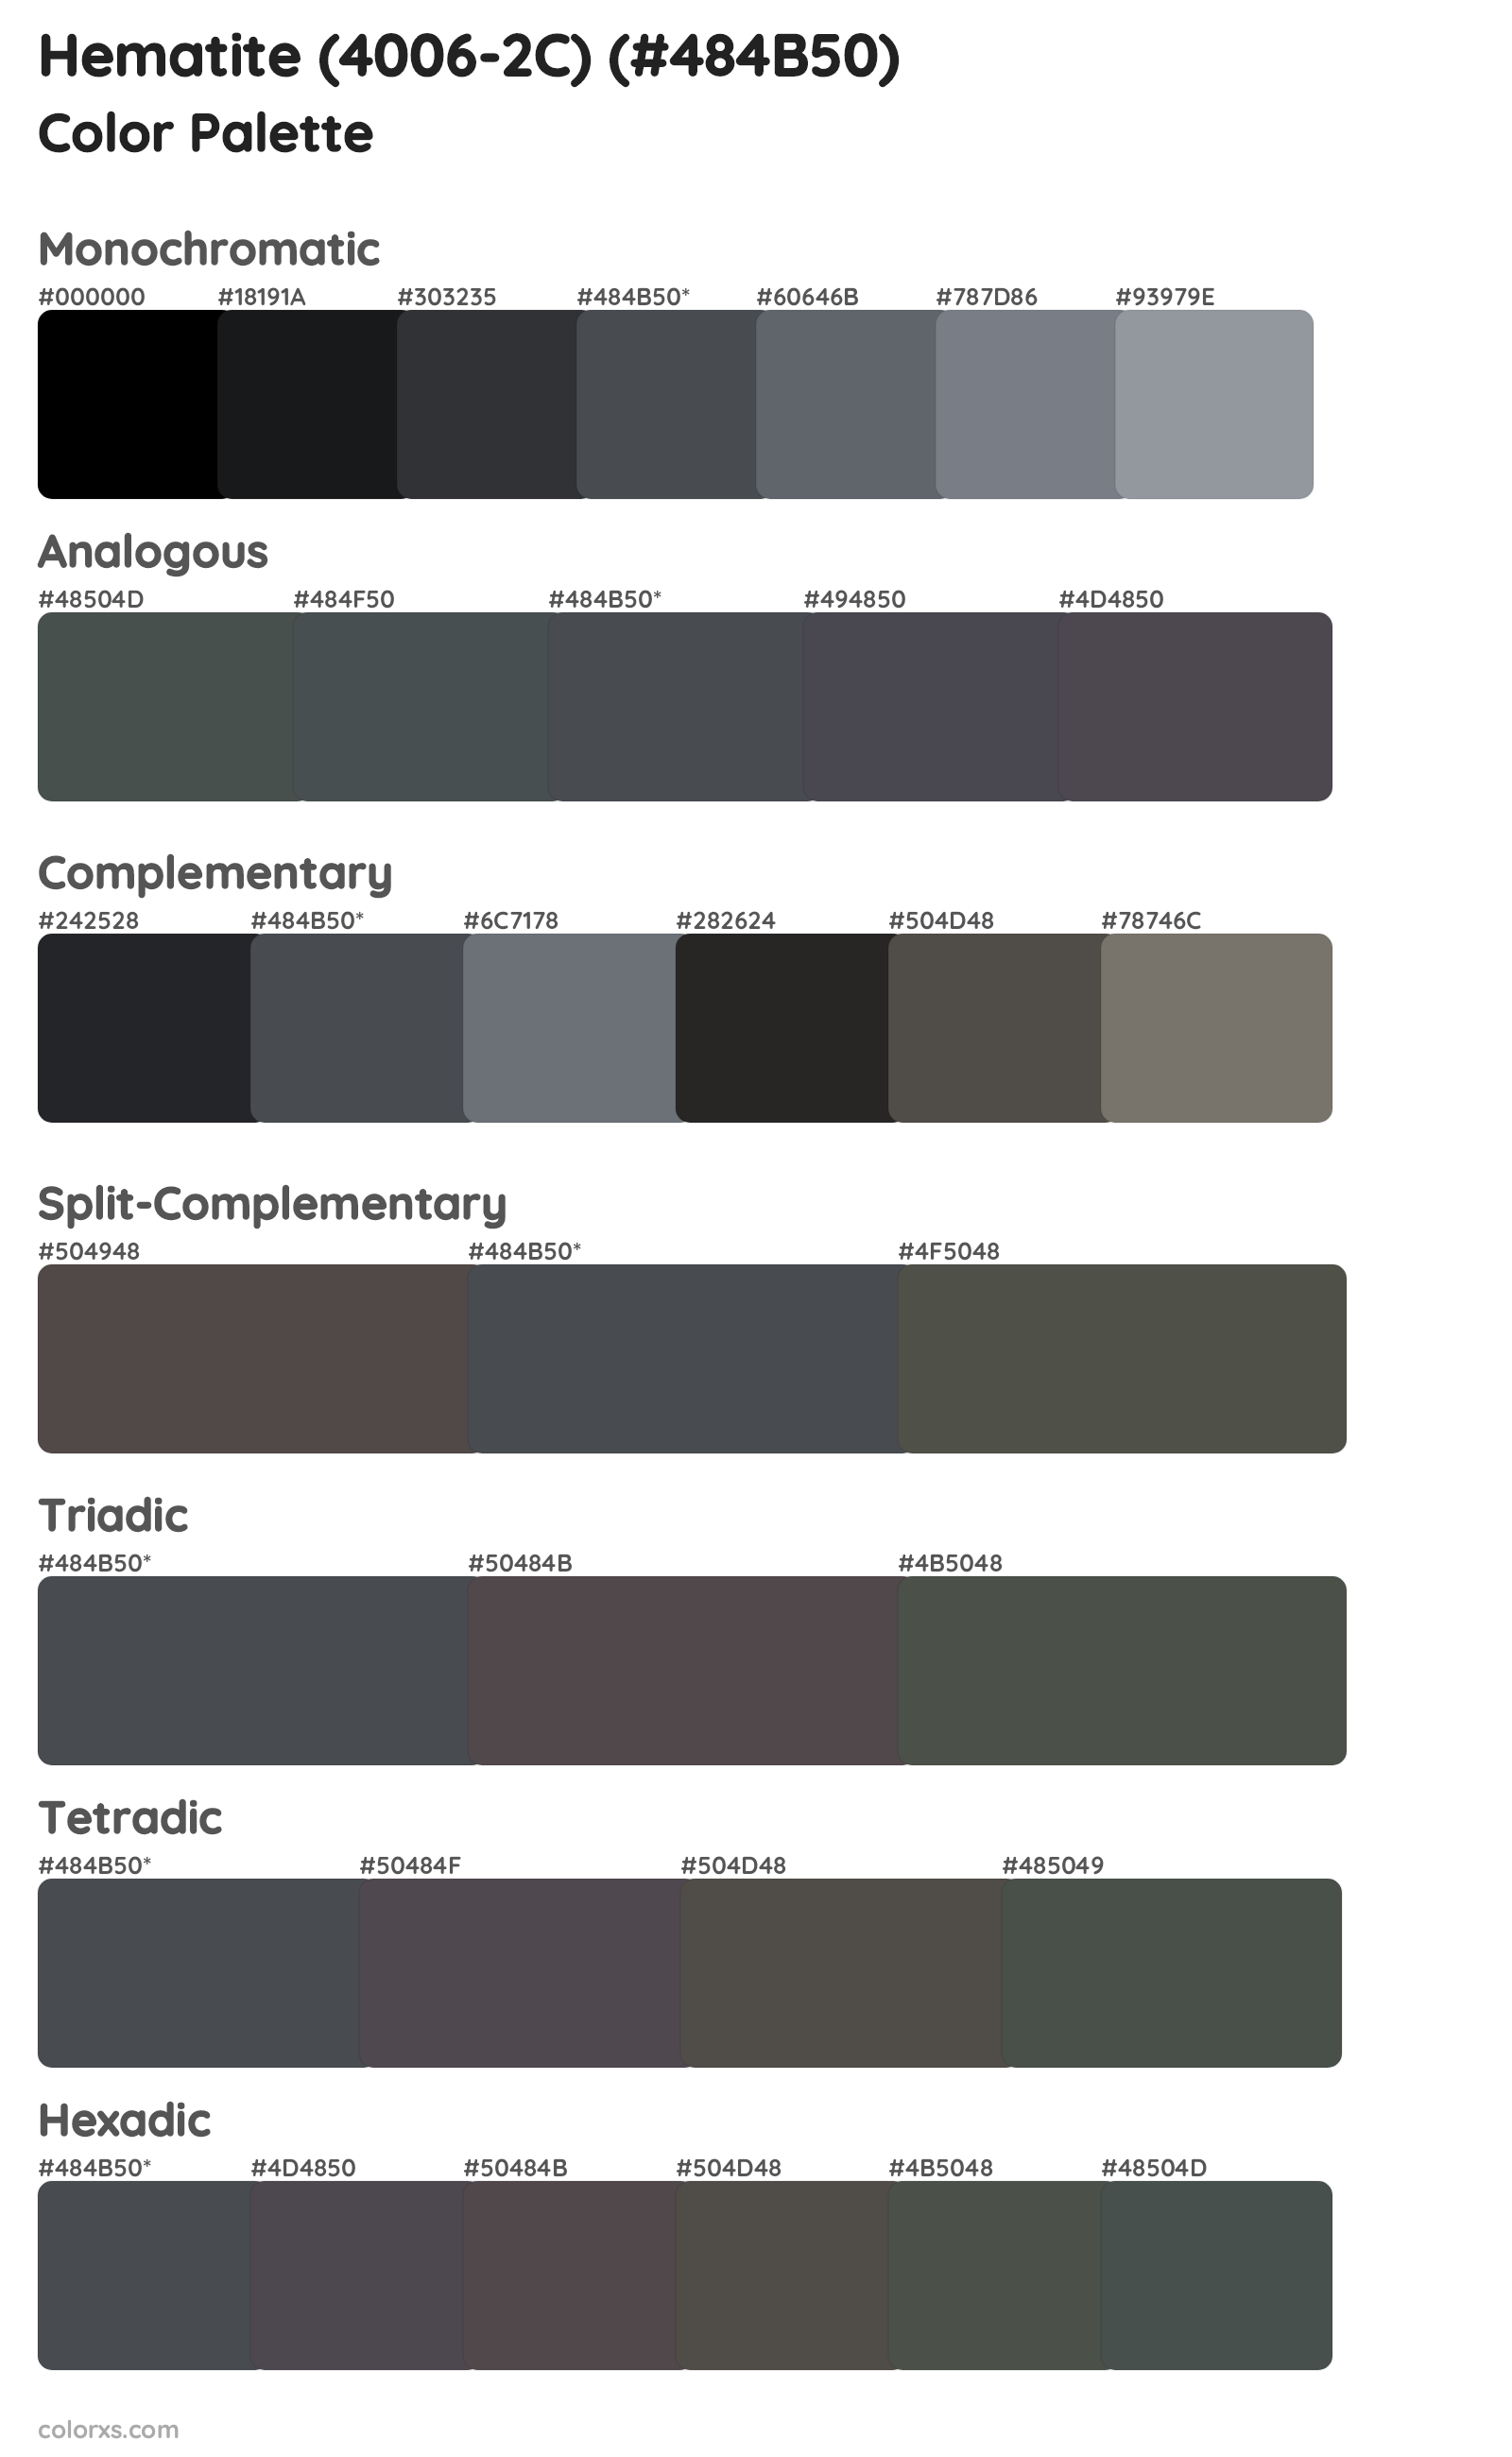 Hematite (4006-2C) Color Scheme Palettes